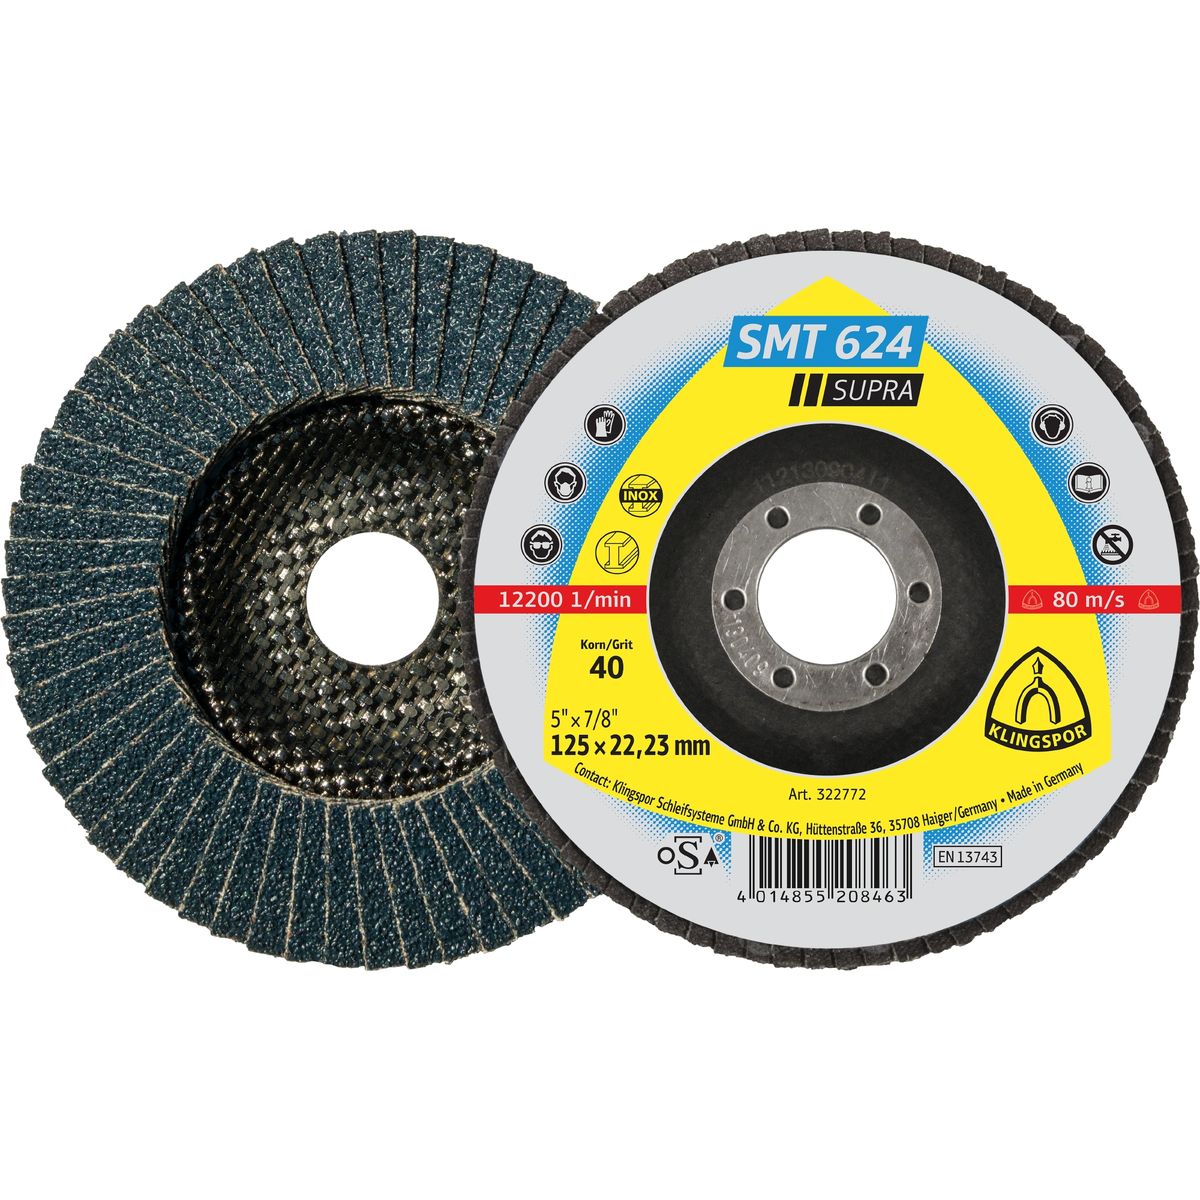 Abrasive mop disc  125X22,23mm, Grit 60 SMT 624 Klingspor